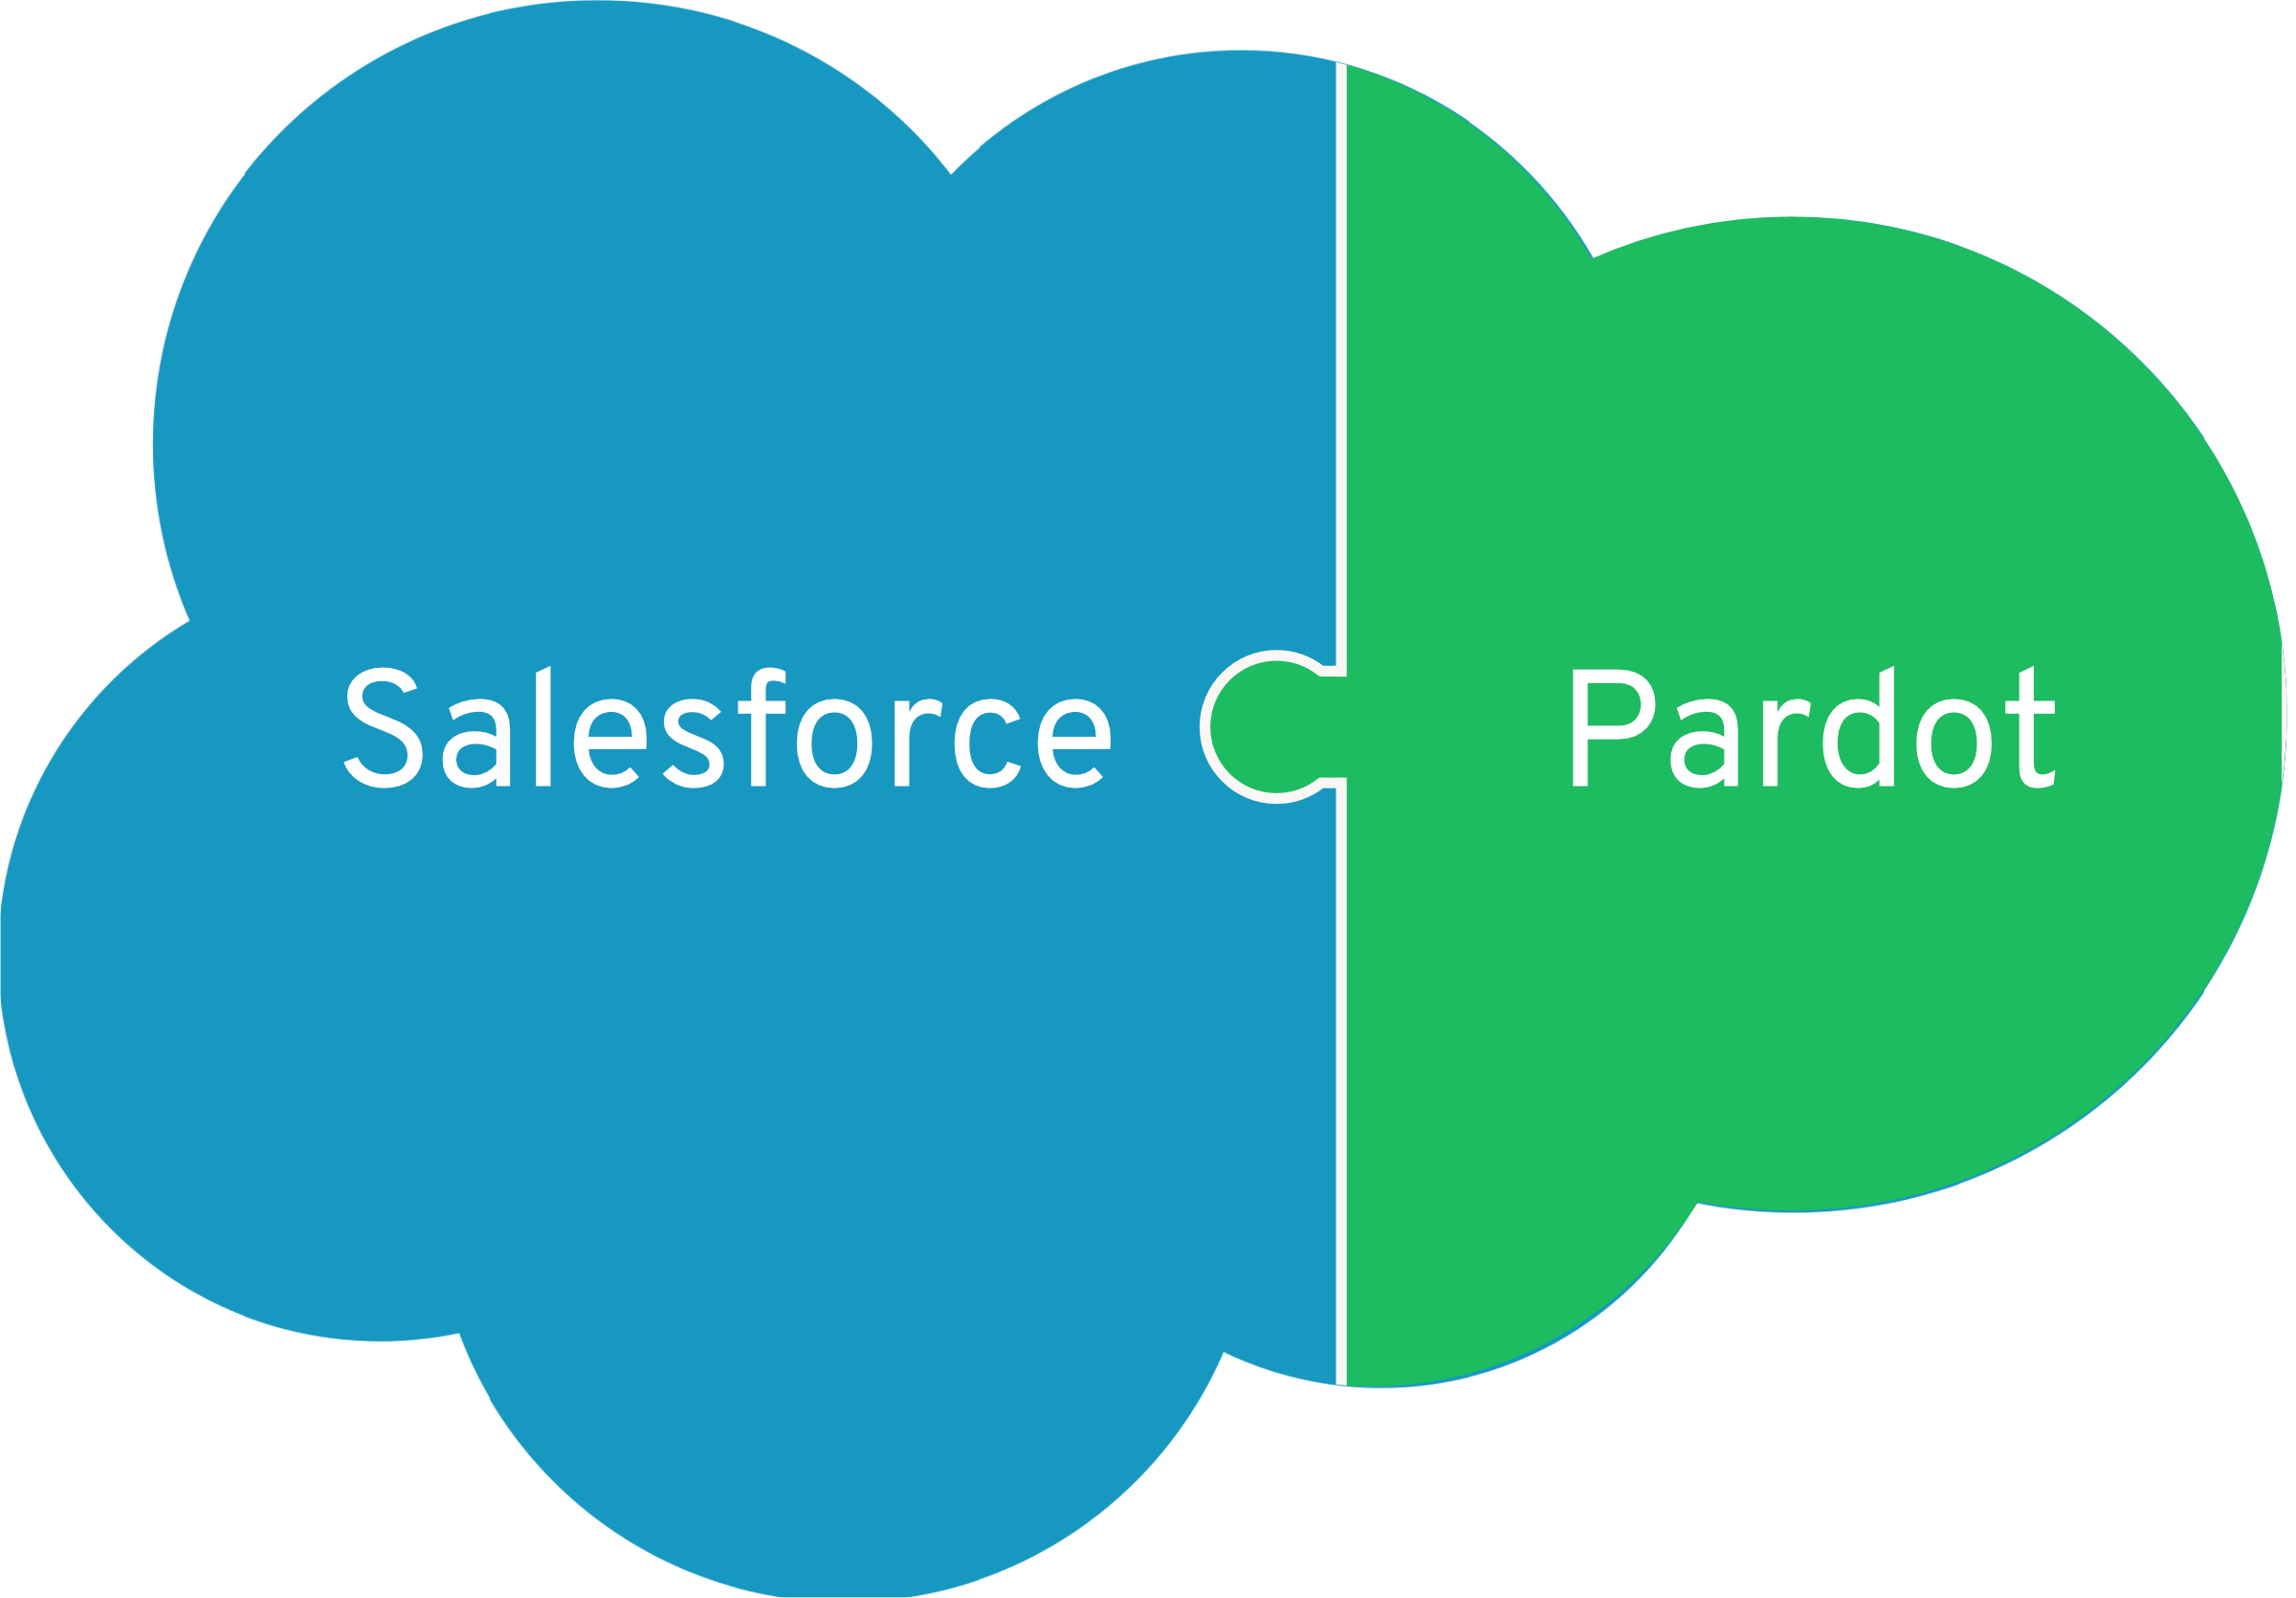 Salesforce und Pardot greifen Hand in Hand: Durch das Zusammenspiel mit Salesforce lassen sich die Funktionen von Pardot erst besonders gut ausreizen.